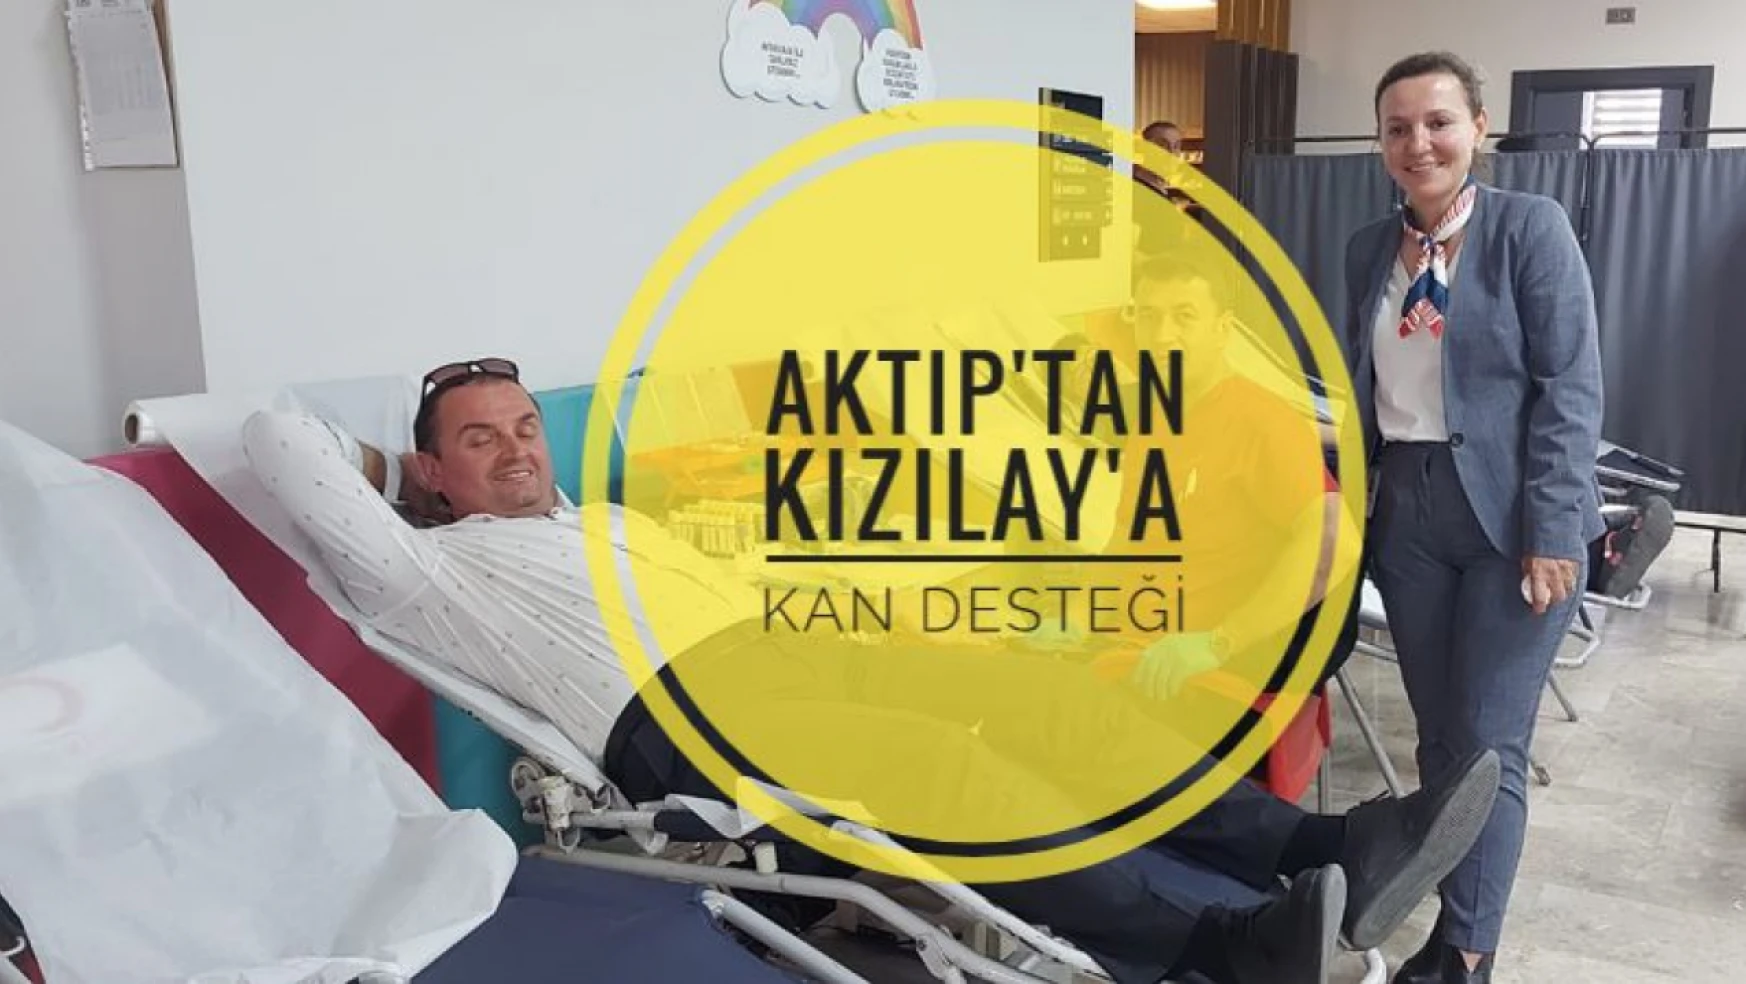 Aktıp Hastanesi'nden Kızılay'a kan desteği